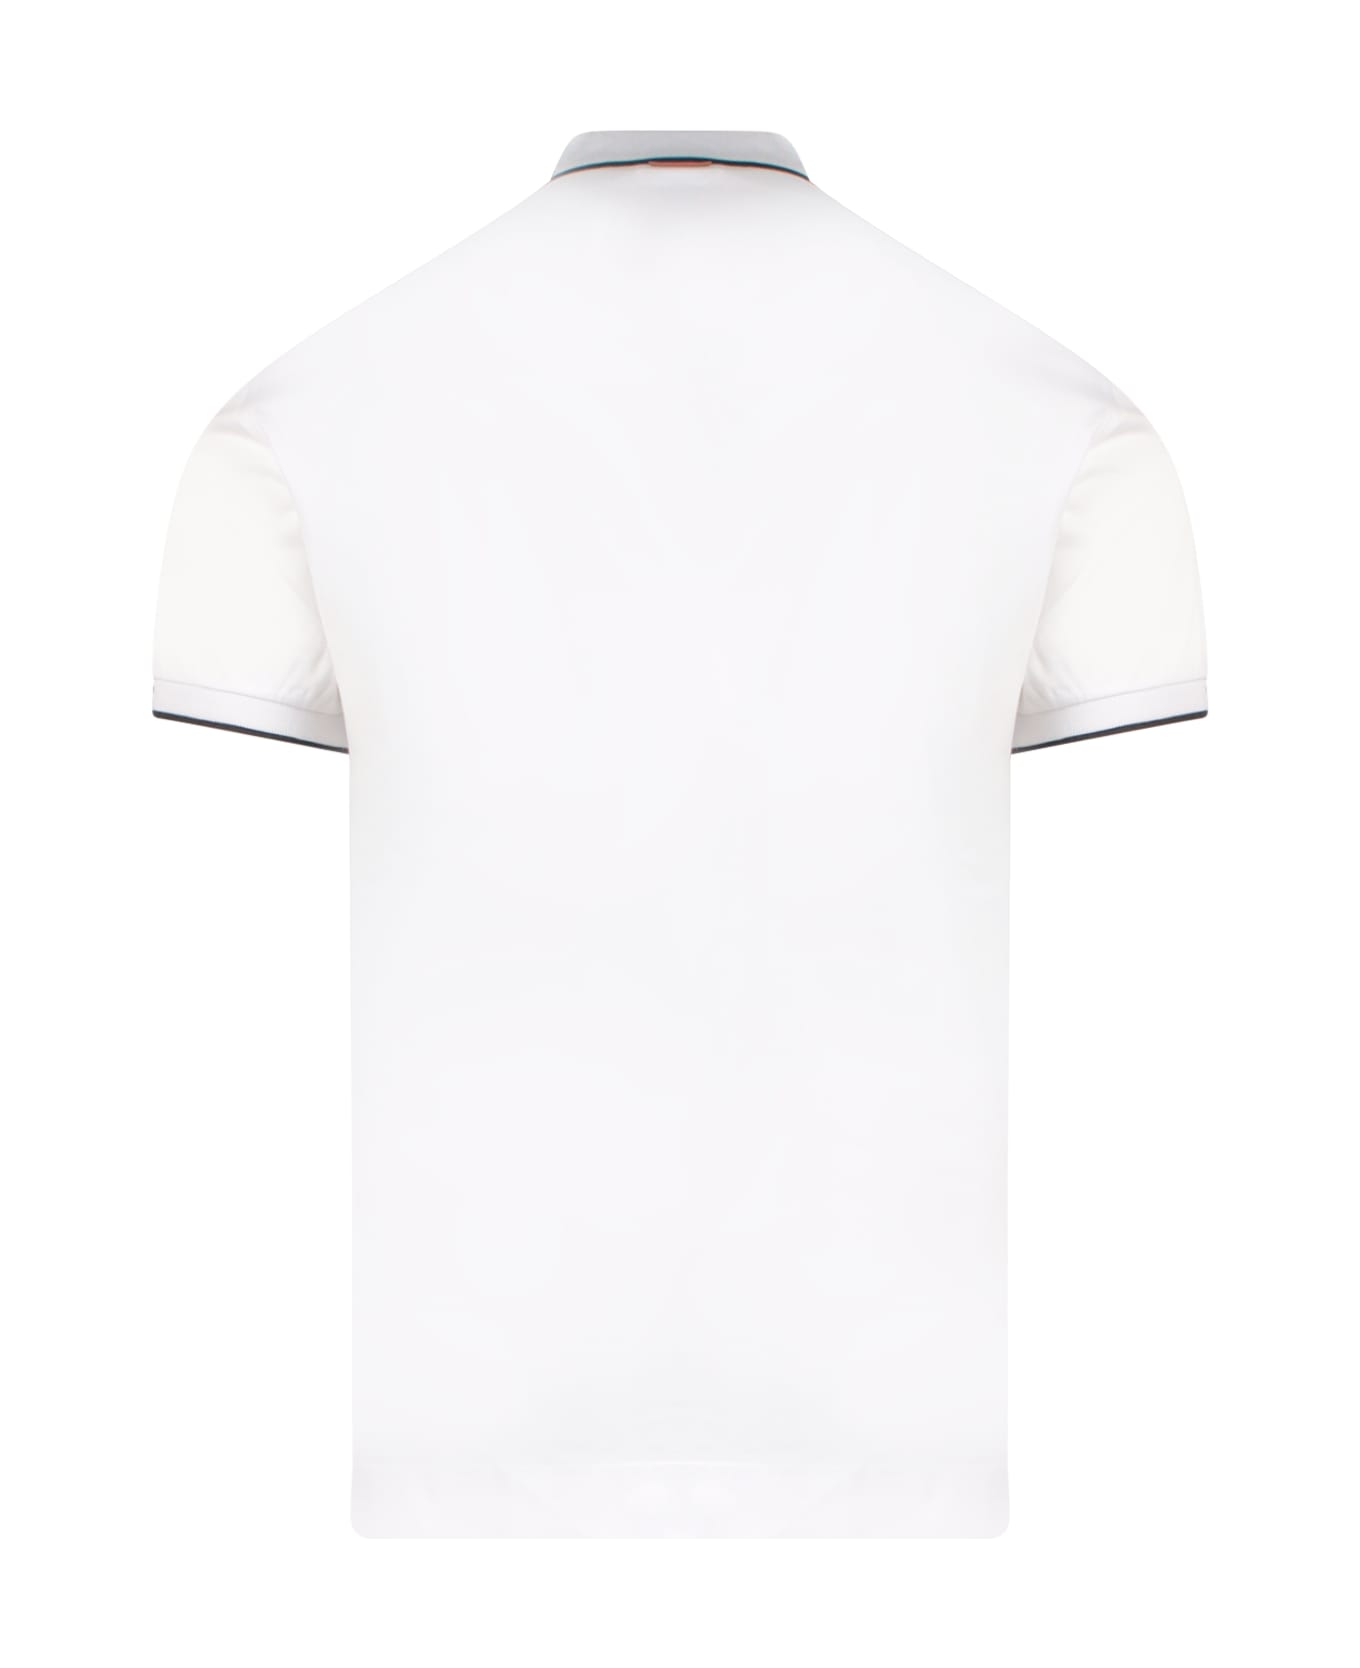 Zegna Polo Shirt - WHITE ポロシャツ